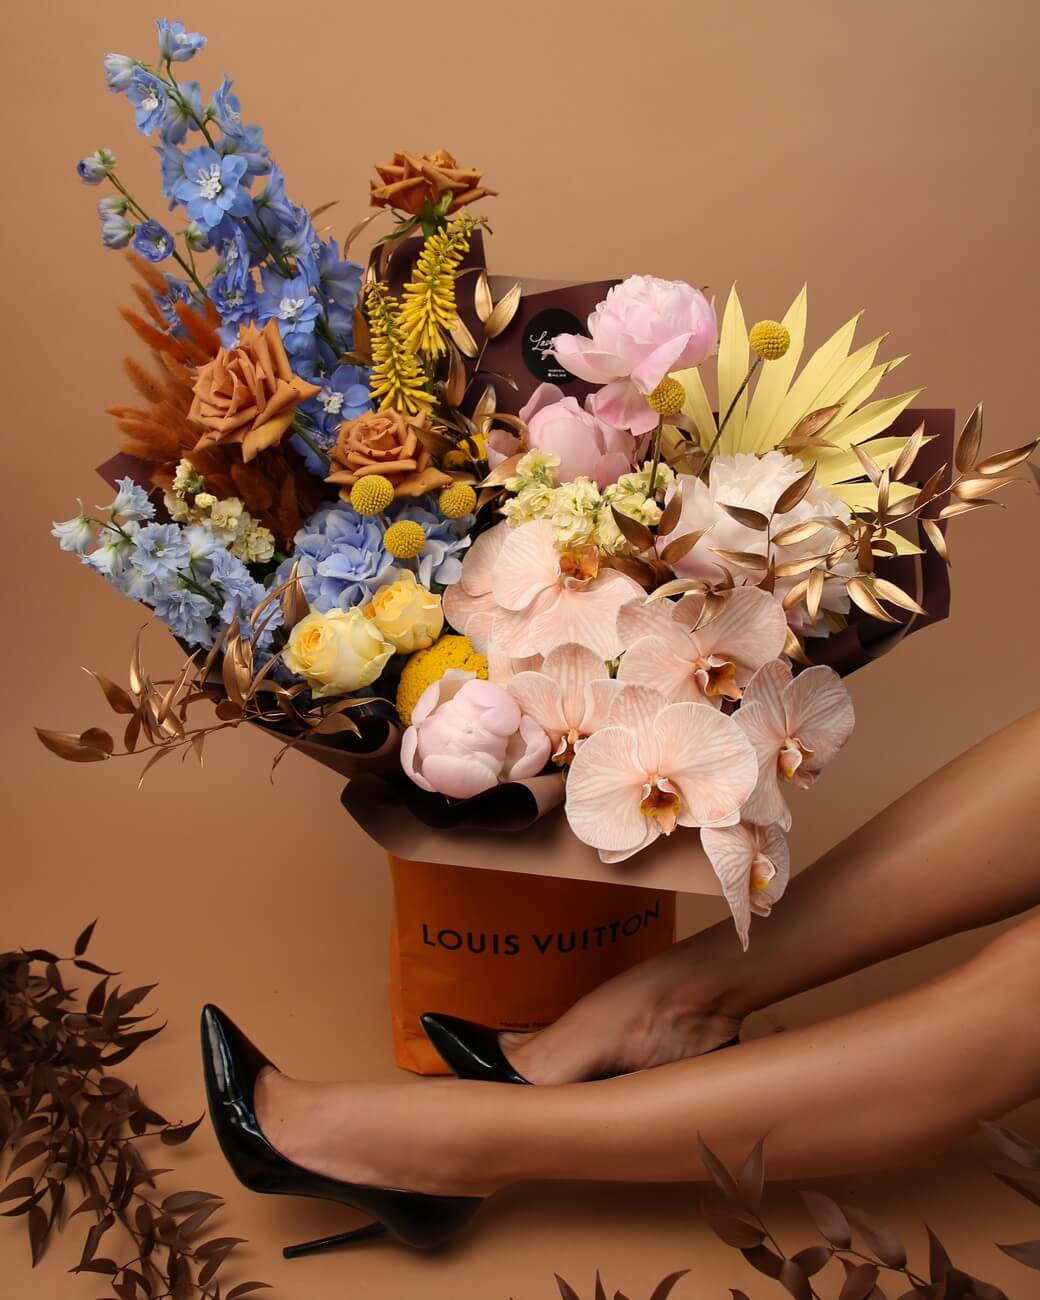 louis vuitton flower arrangement